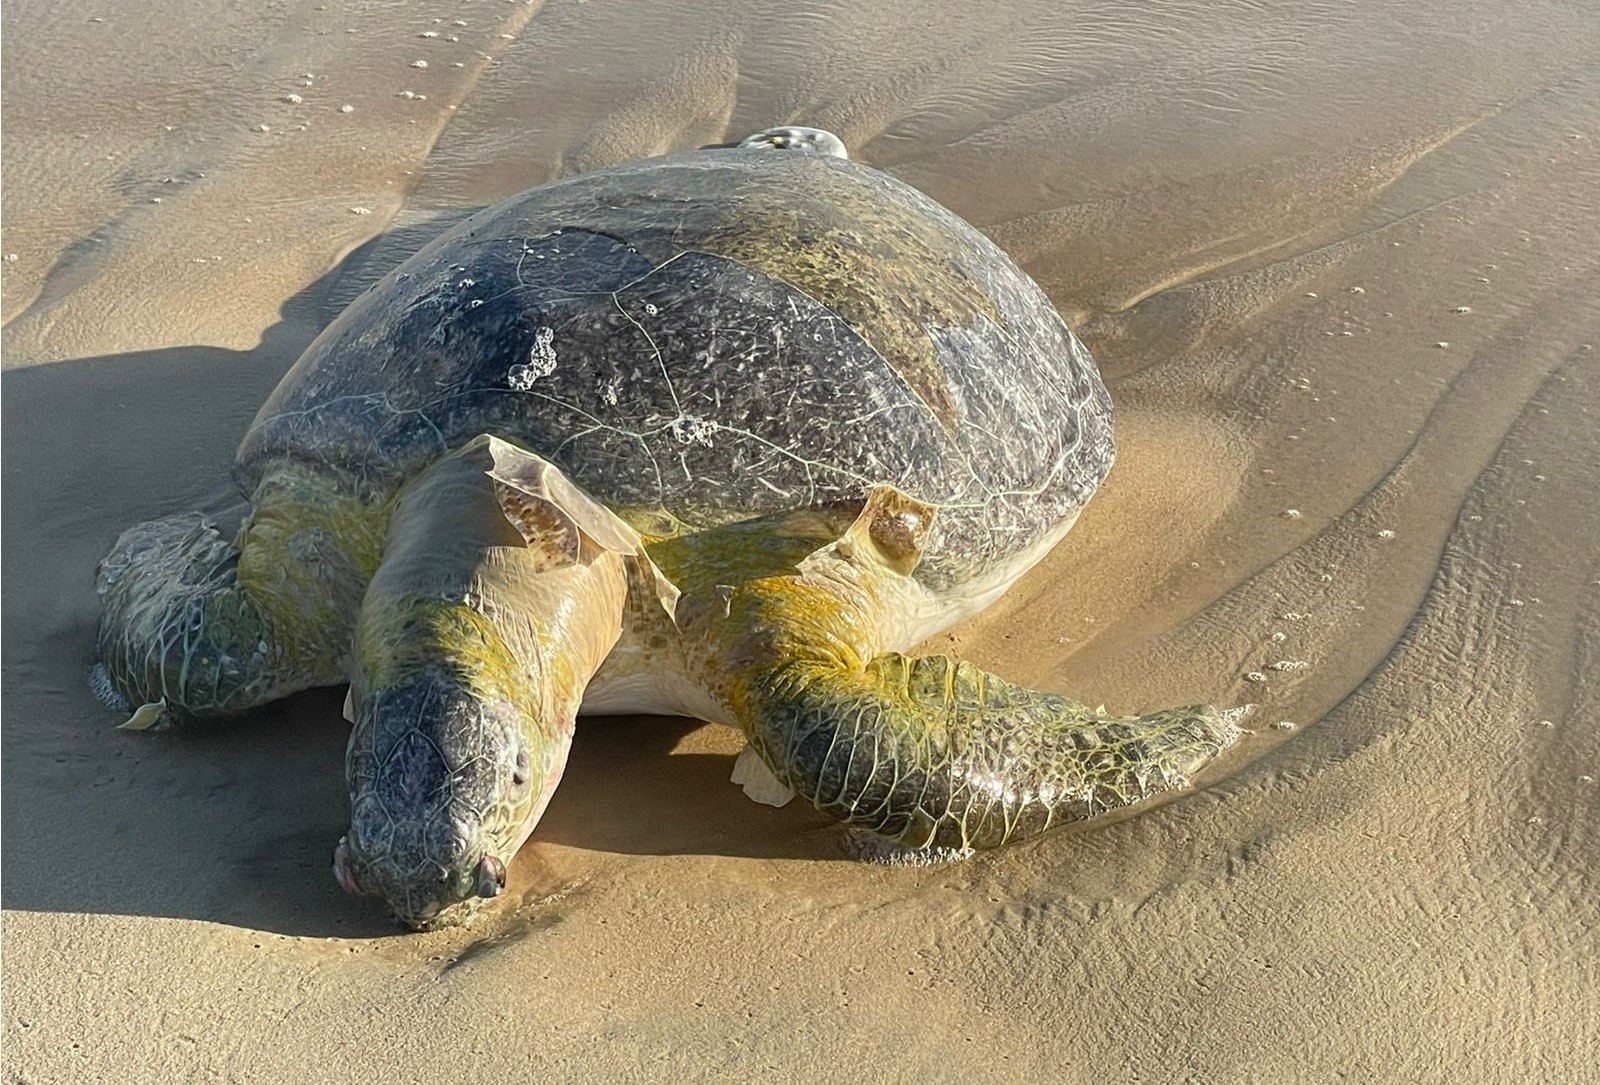 Tartaruga é encontrada morta na praia do Porto das Dunas, no Ceará